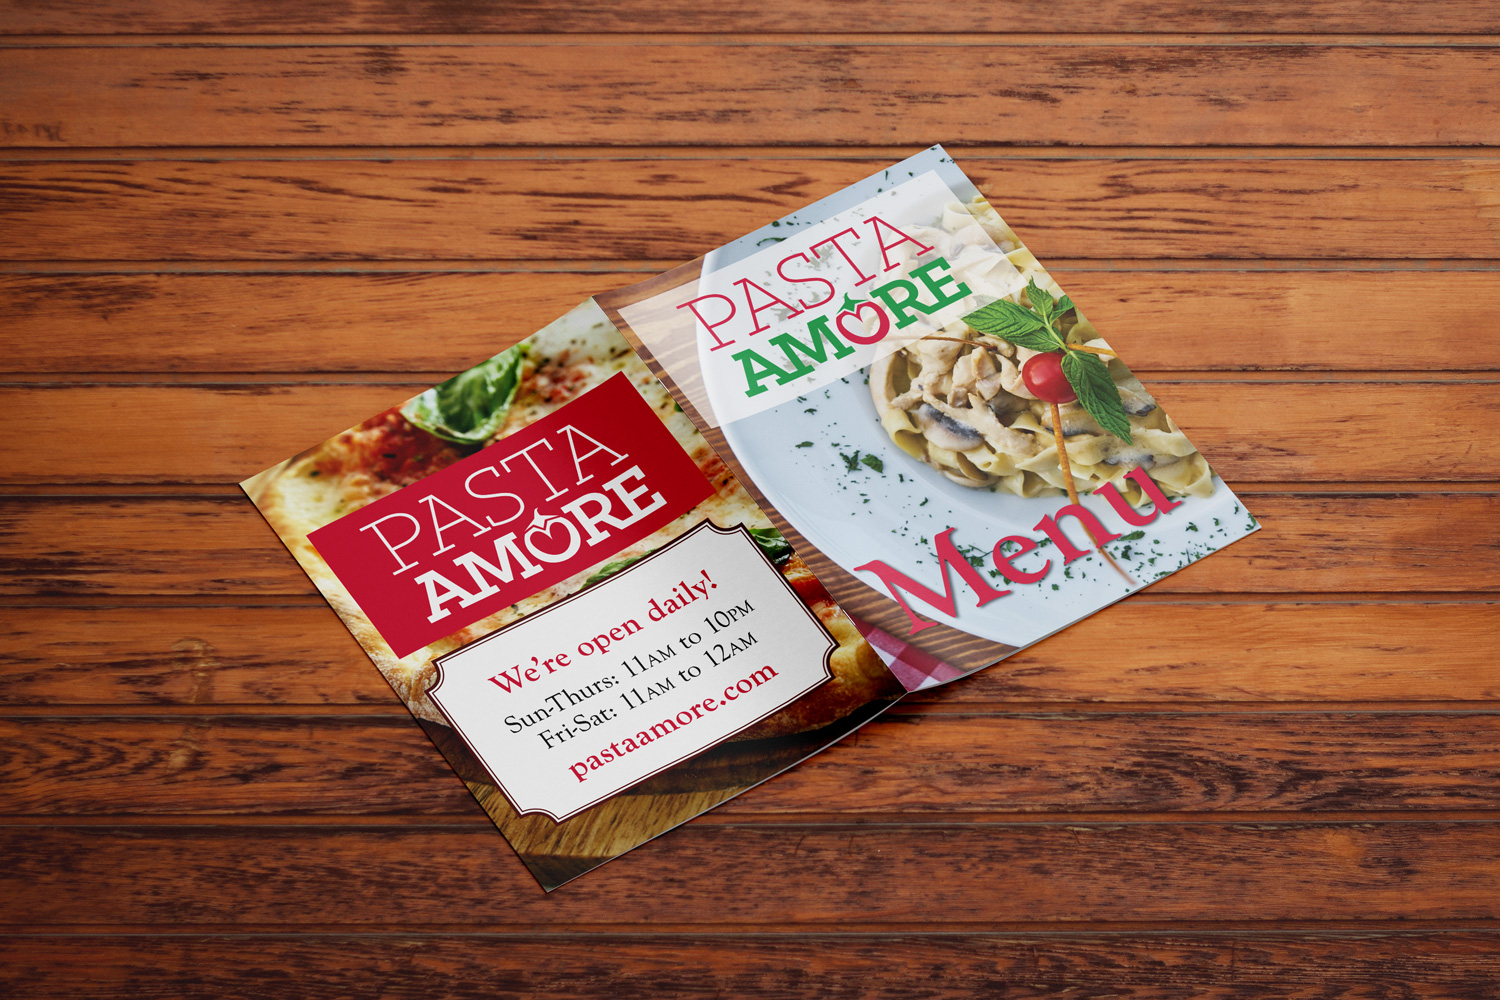 Pasta Amore menu cover design mockup